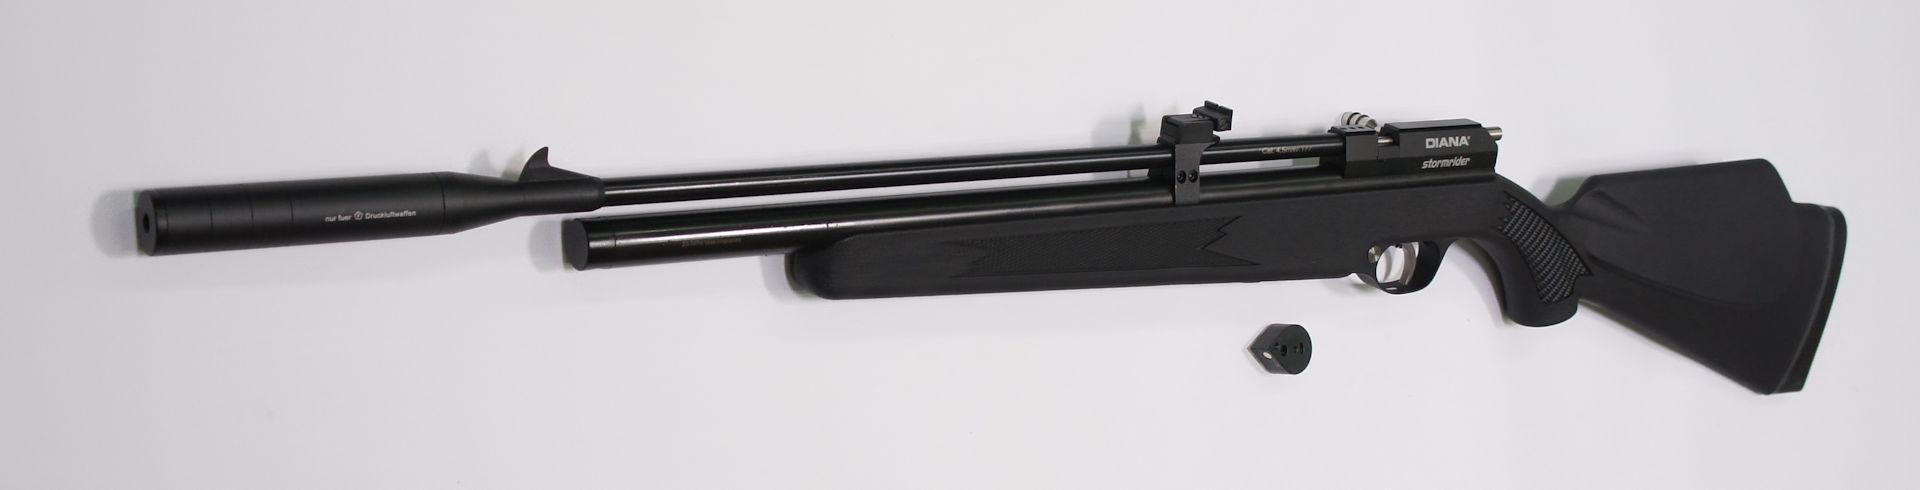 PCP Luftgewehr DIANA STORMRIDER im Kaliber 4,5 mm mit Kunststoffsschaft